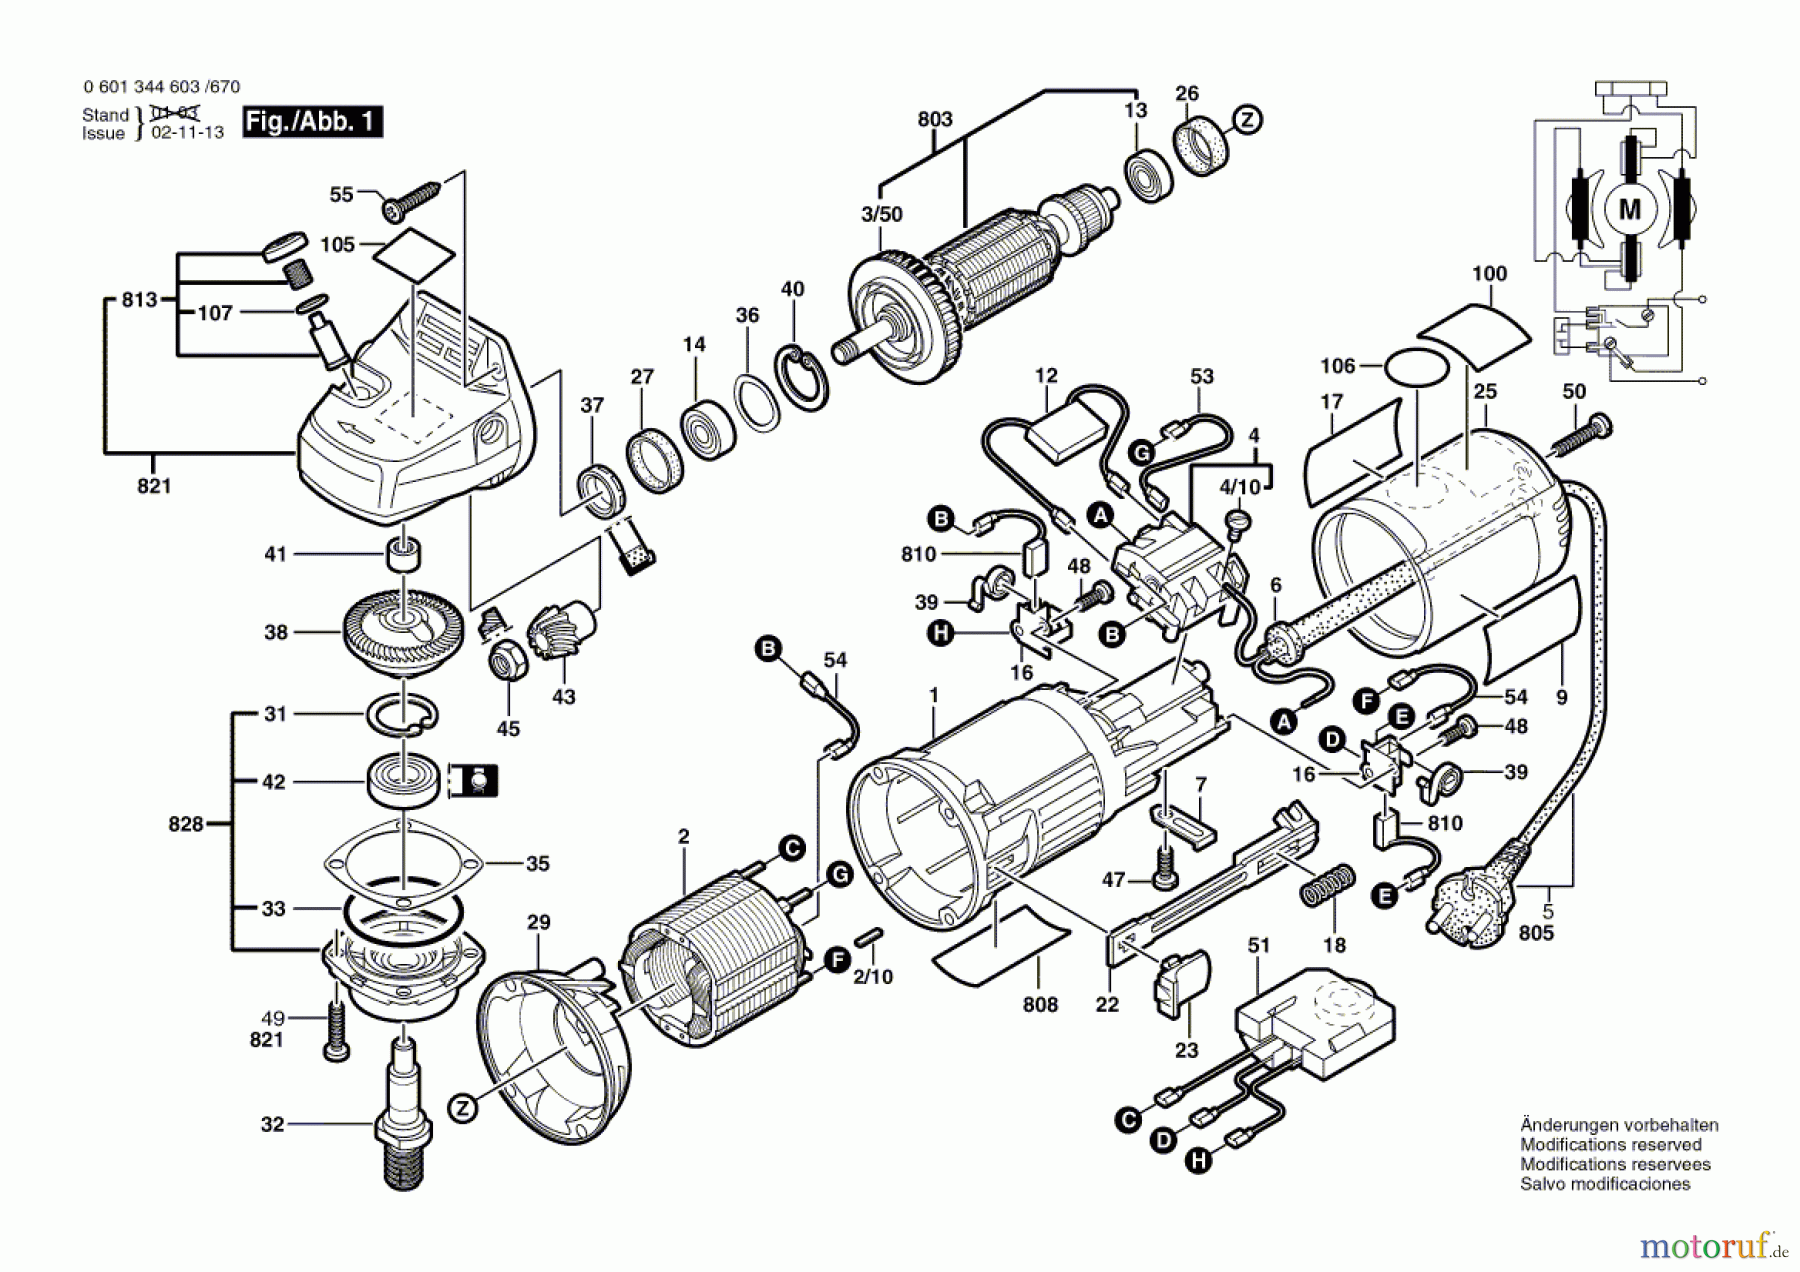  Bosch Werkzeug Winkelschleifer GWS 9-125 CE Seite 1